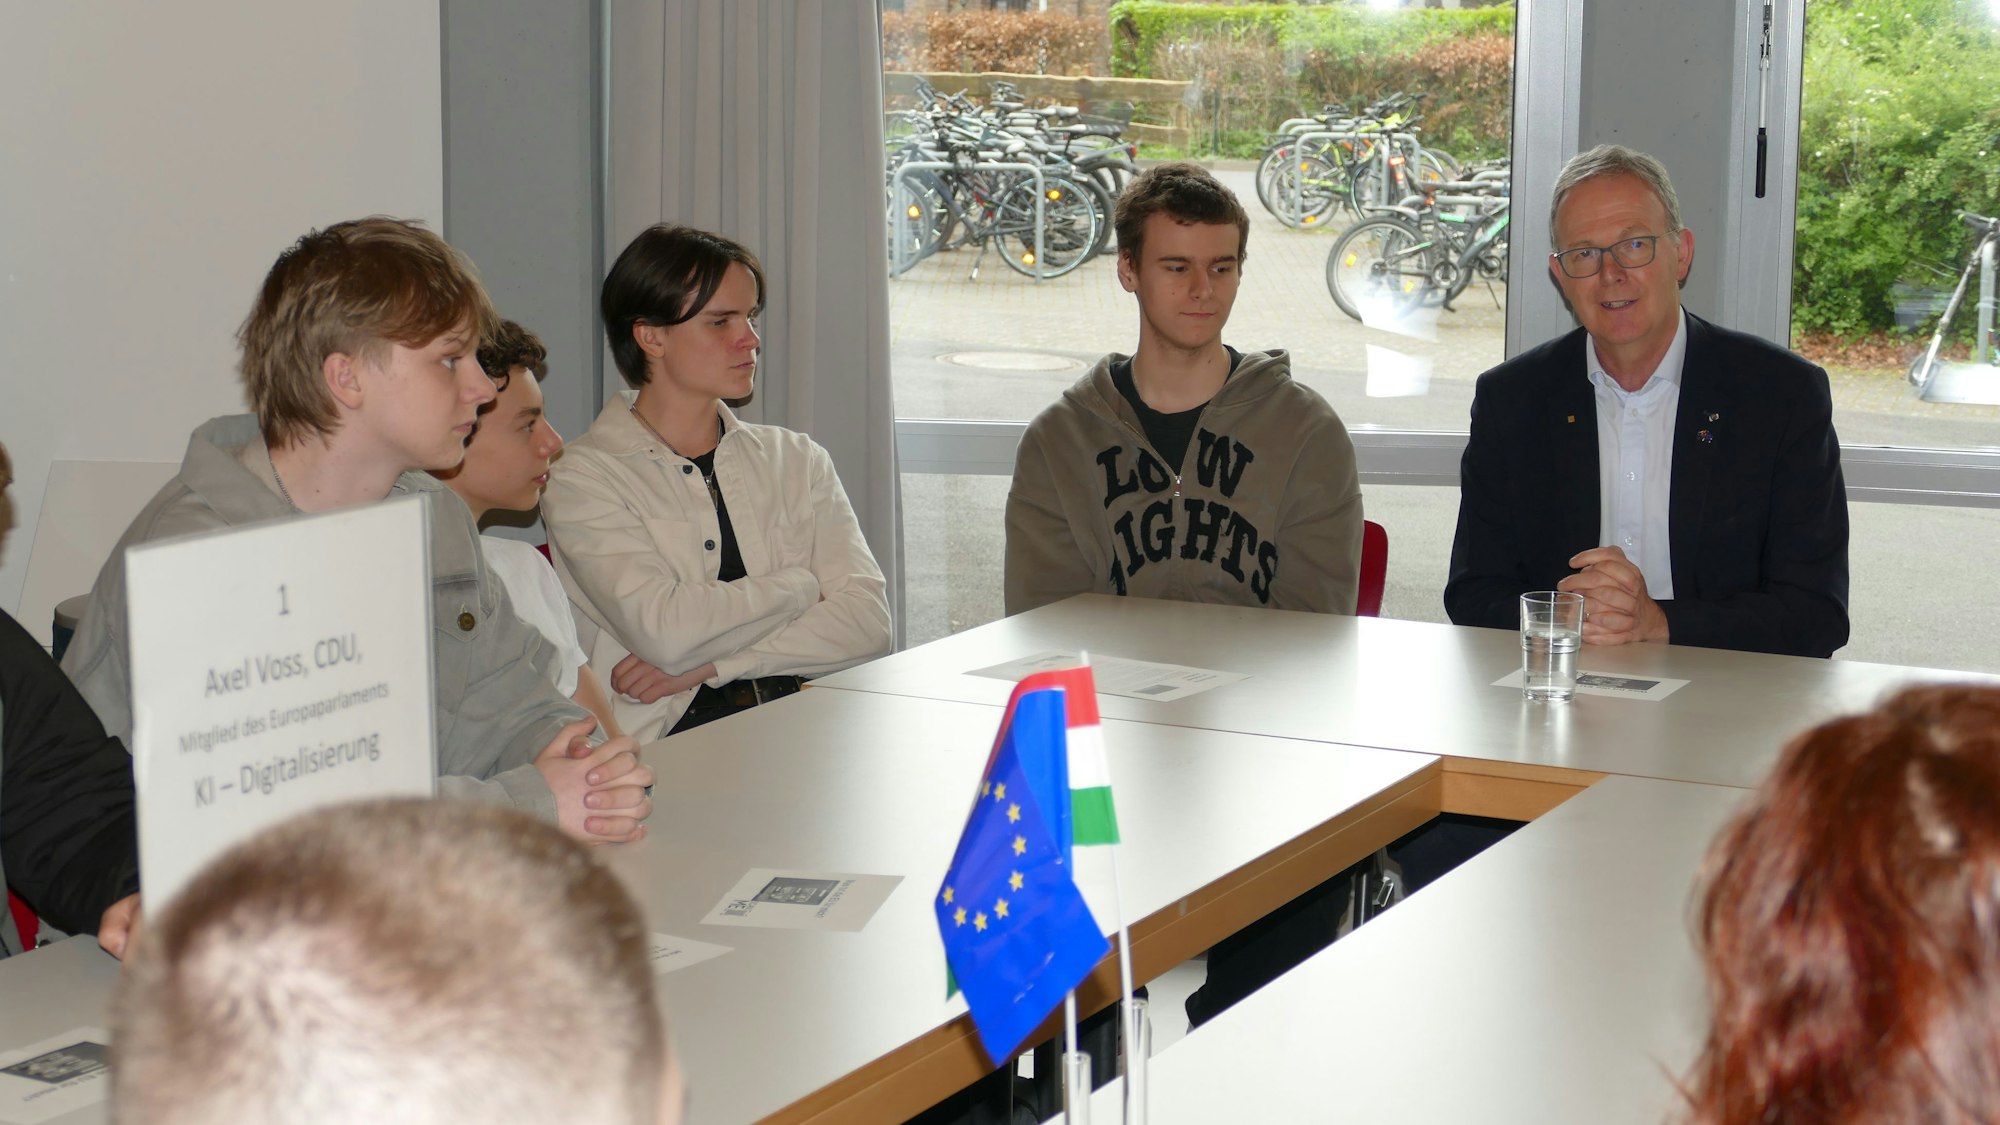 Jugendliche und ein Mann mit grauen Haaren sitzen an einem Tisch, auf dem ein EU-Fähnchen steht.